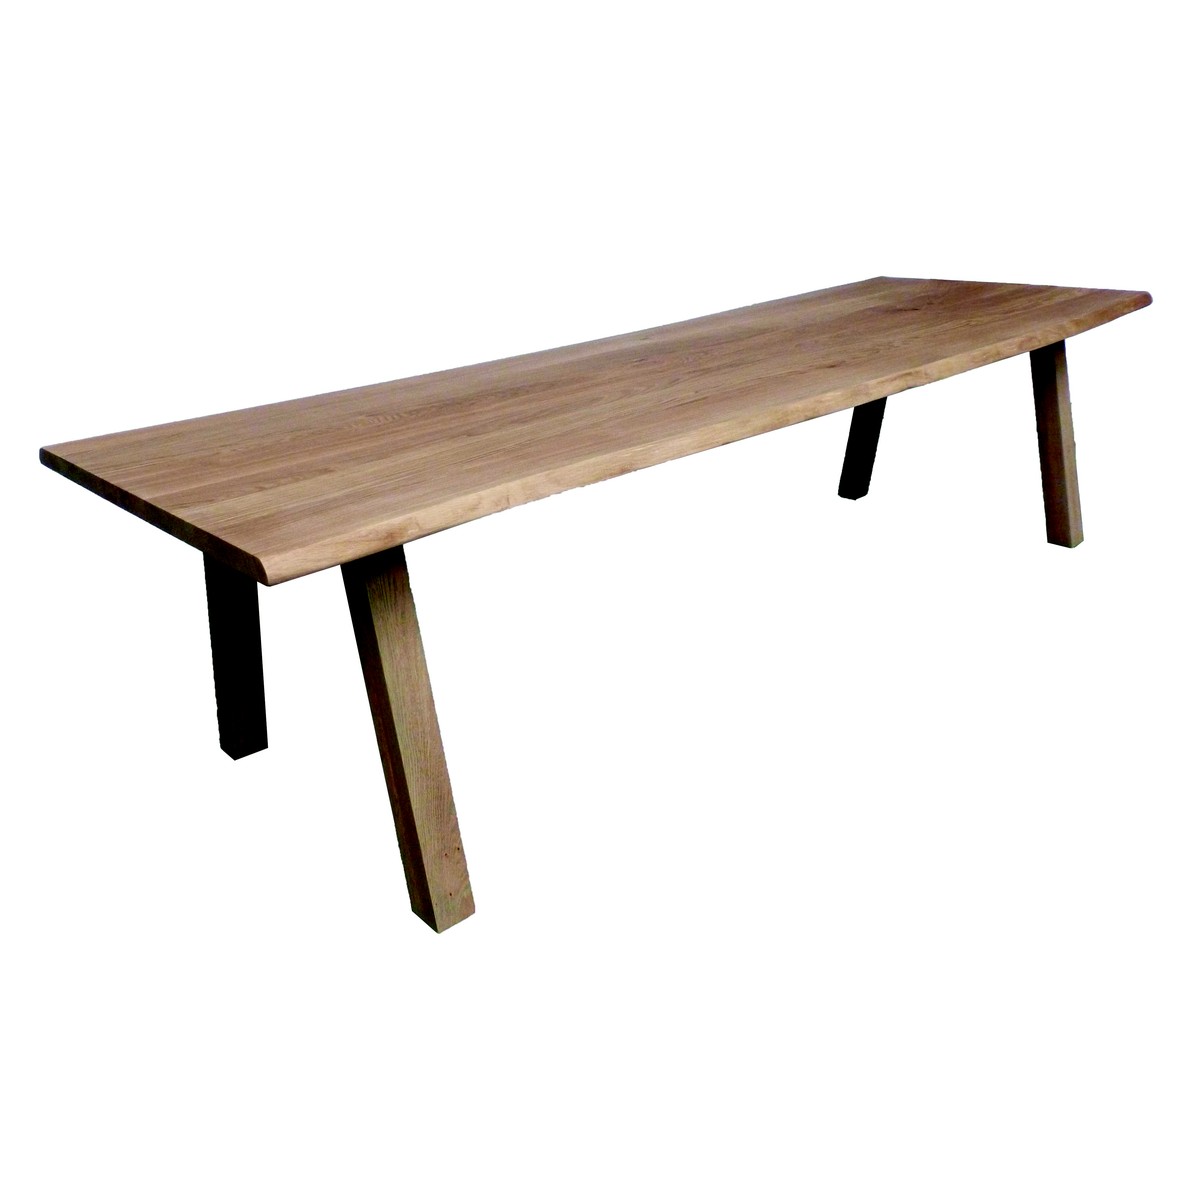   Table de bar Alta Trunk rectangulaire  160x100x110cm